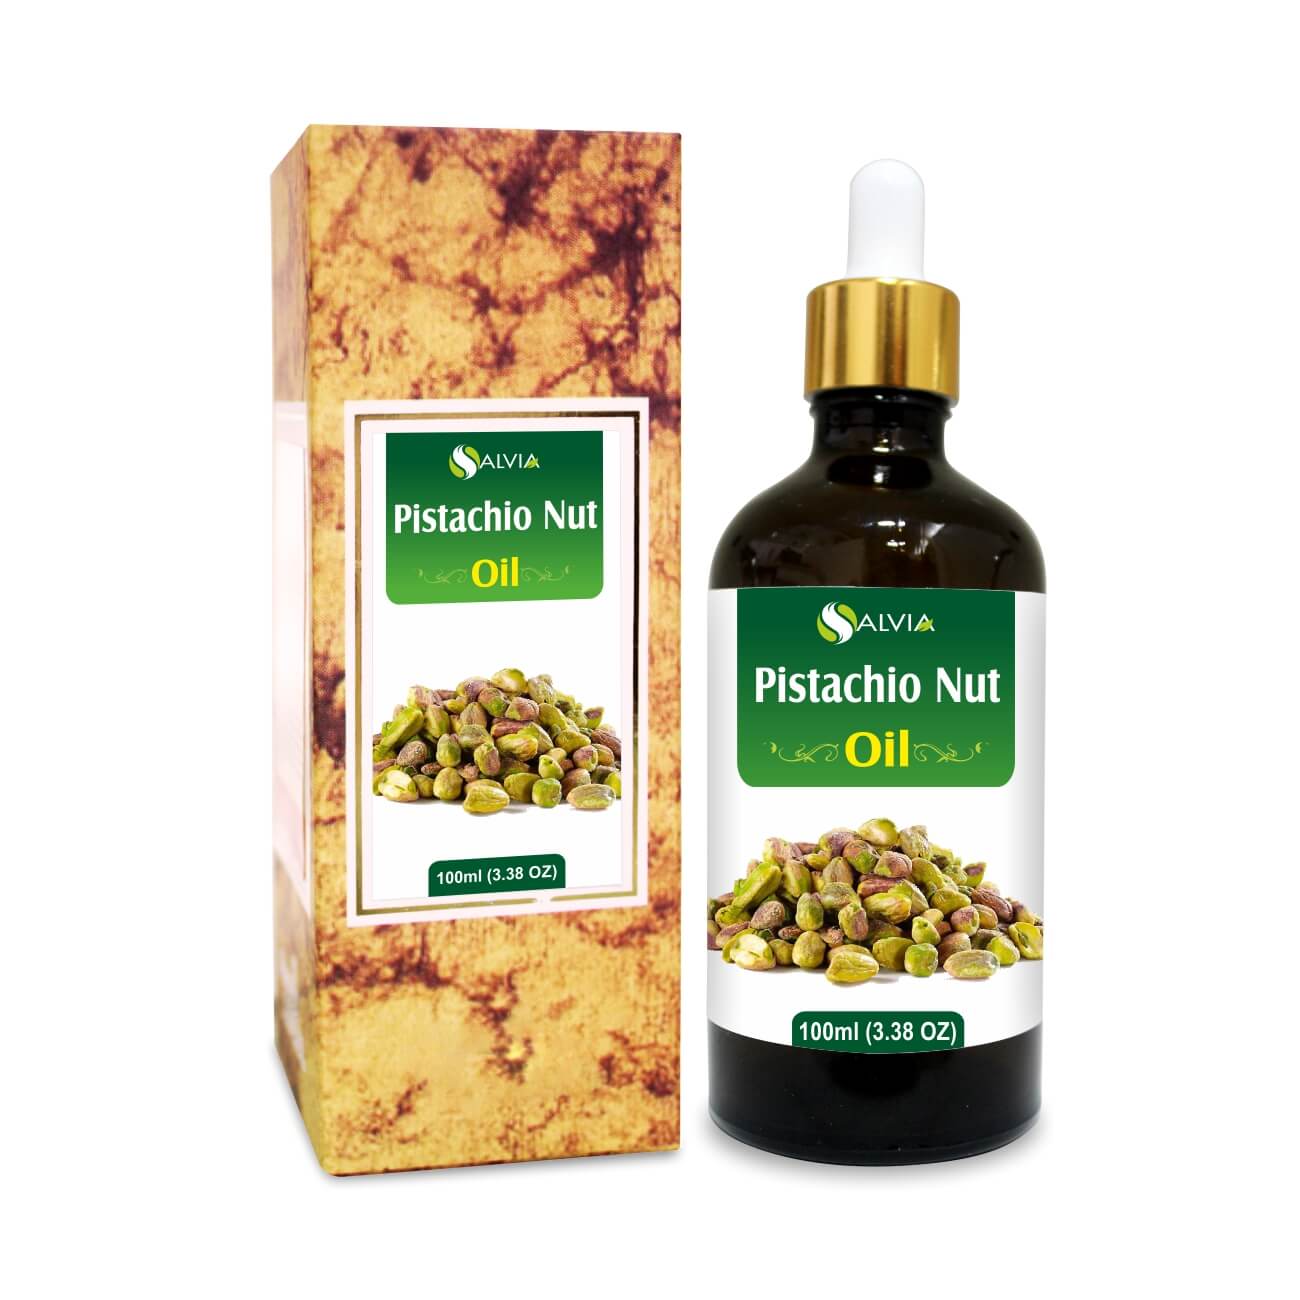 Pistachio Nut Oil - Shoprythm